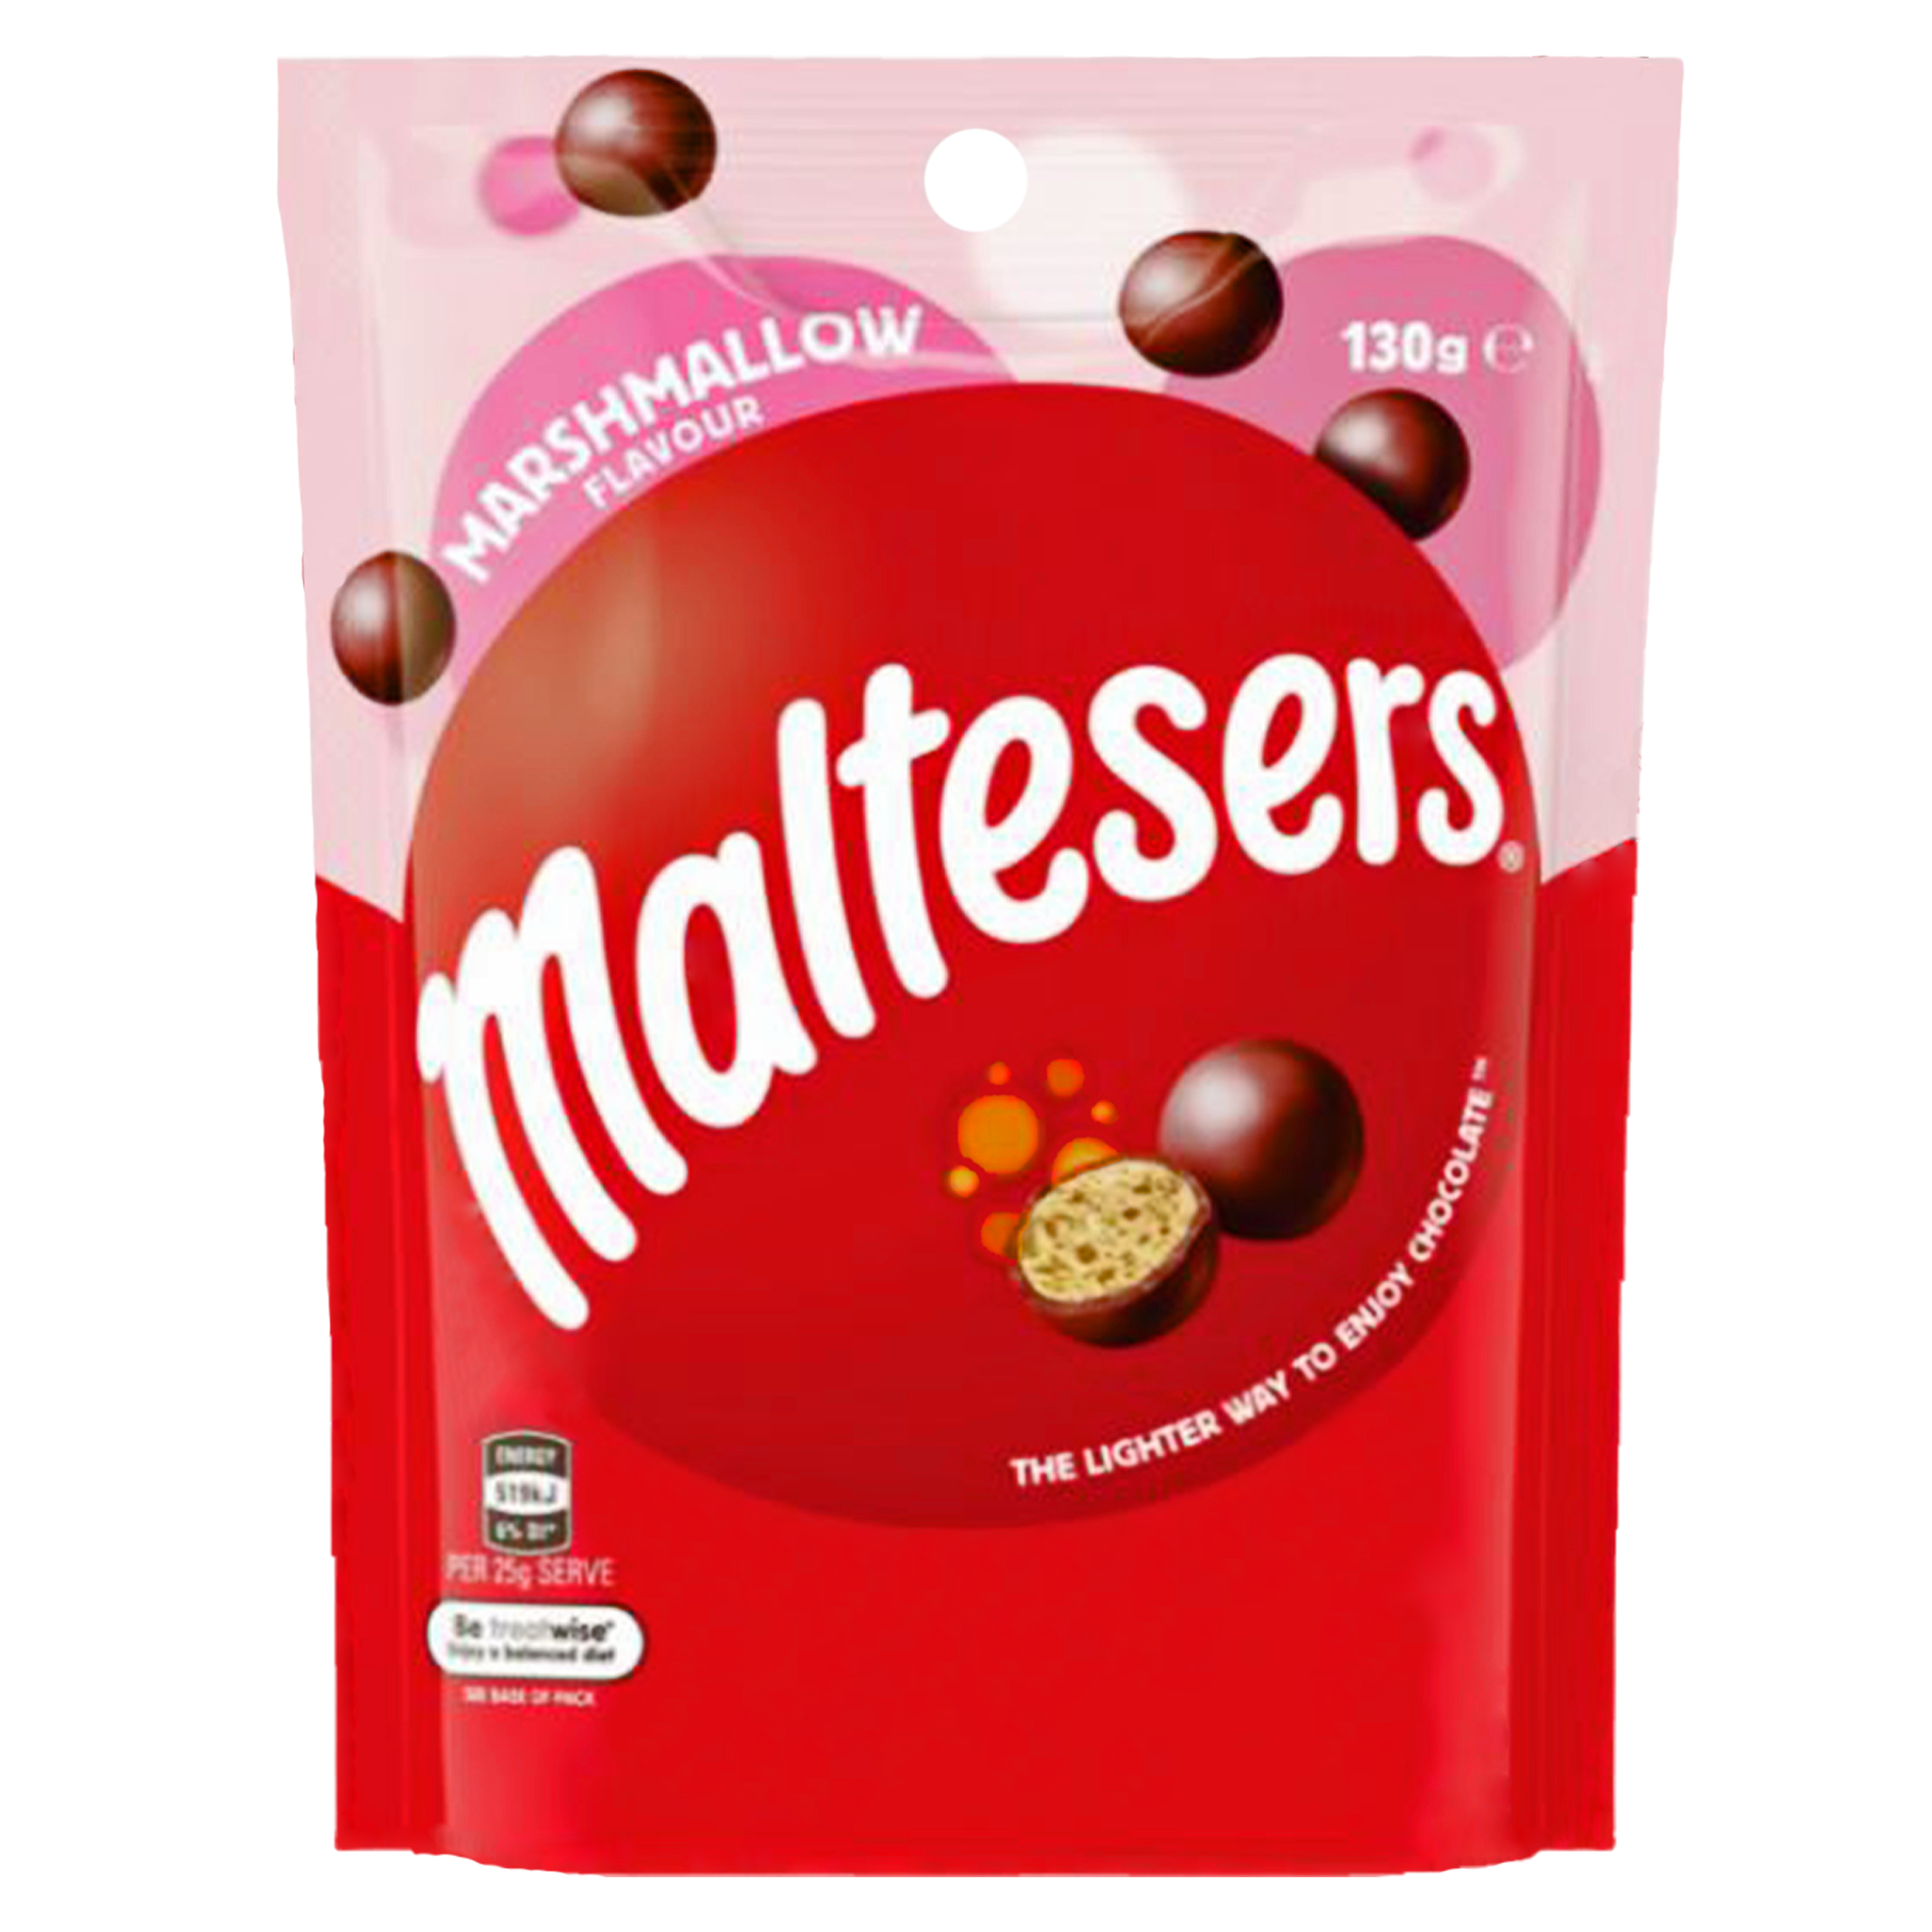 Maltesers Marshmallow - Australia